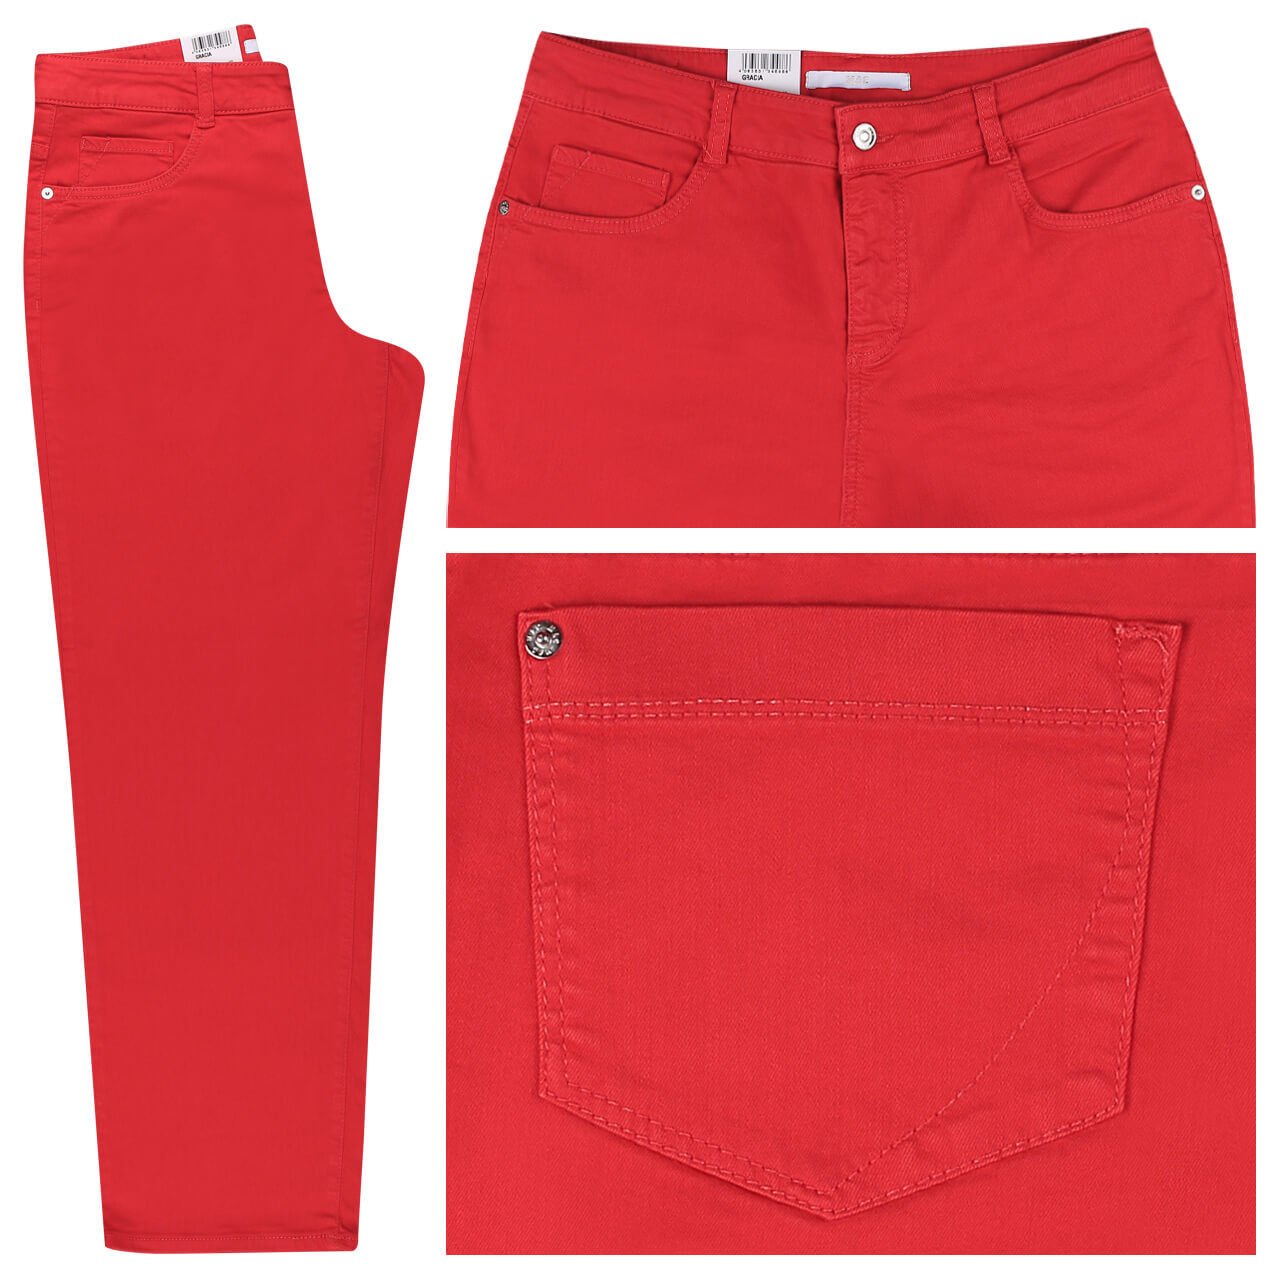 MAC Jeans Gracia für Damen in Rot, FarbNr.: 449R